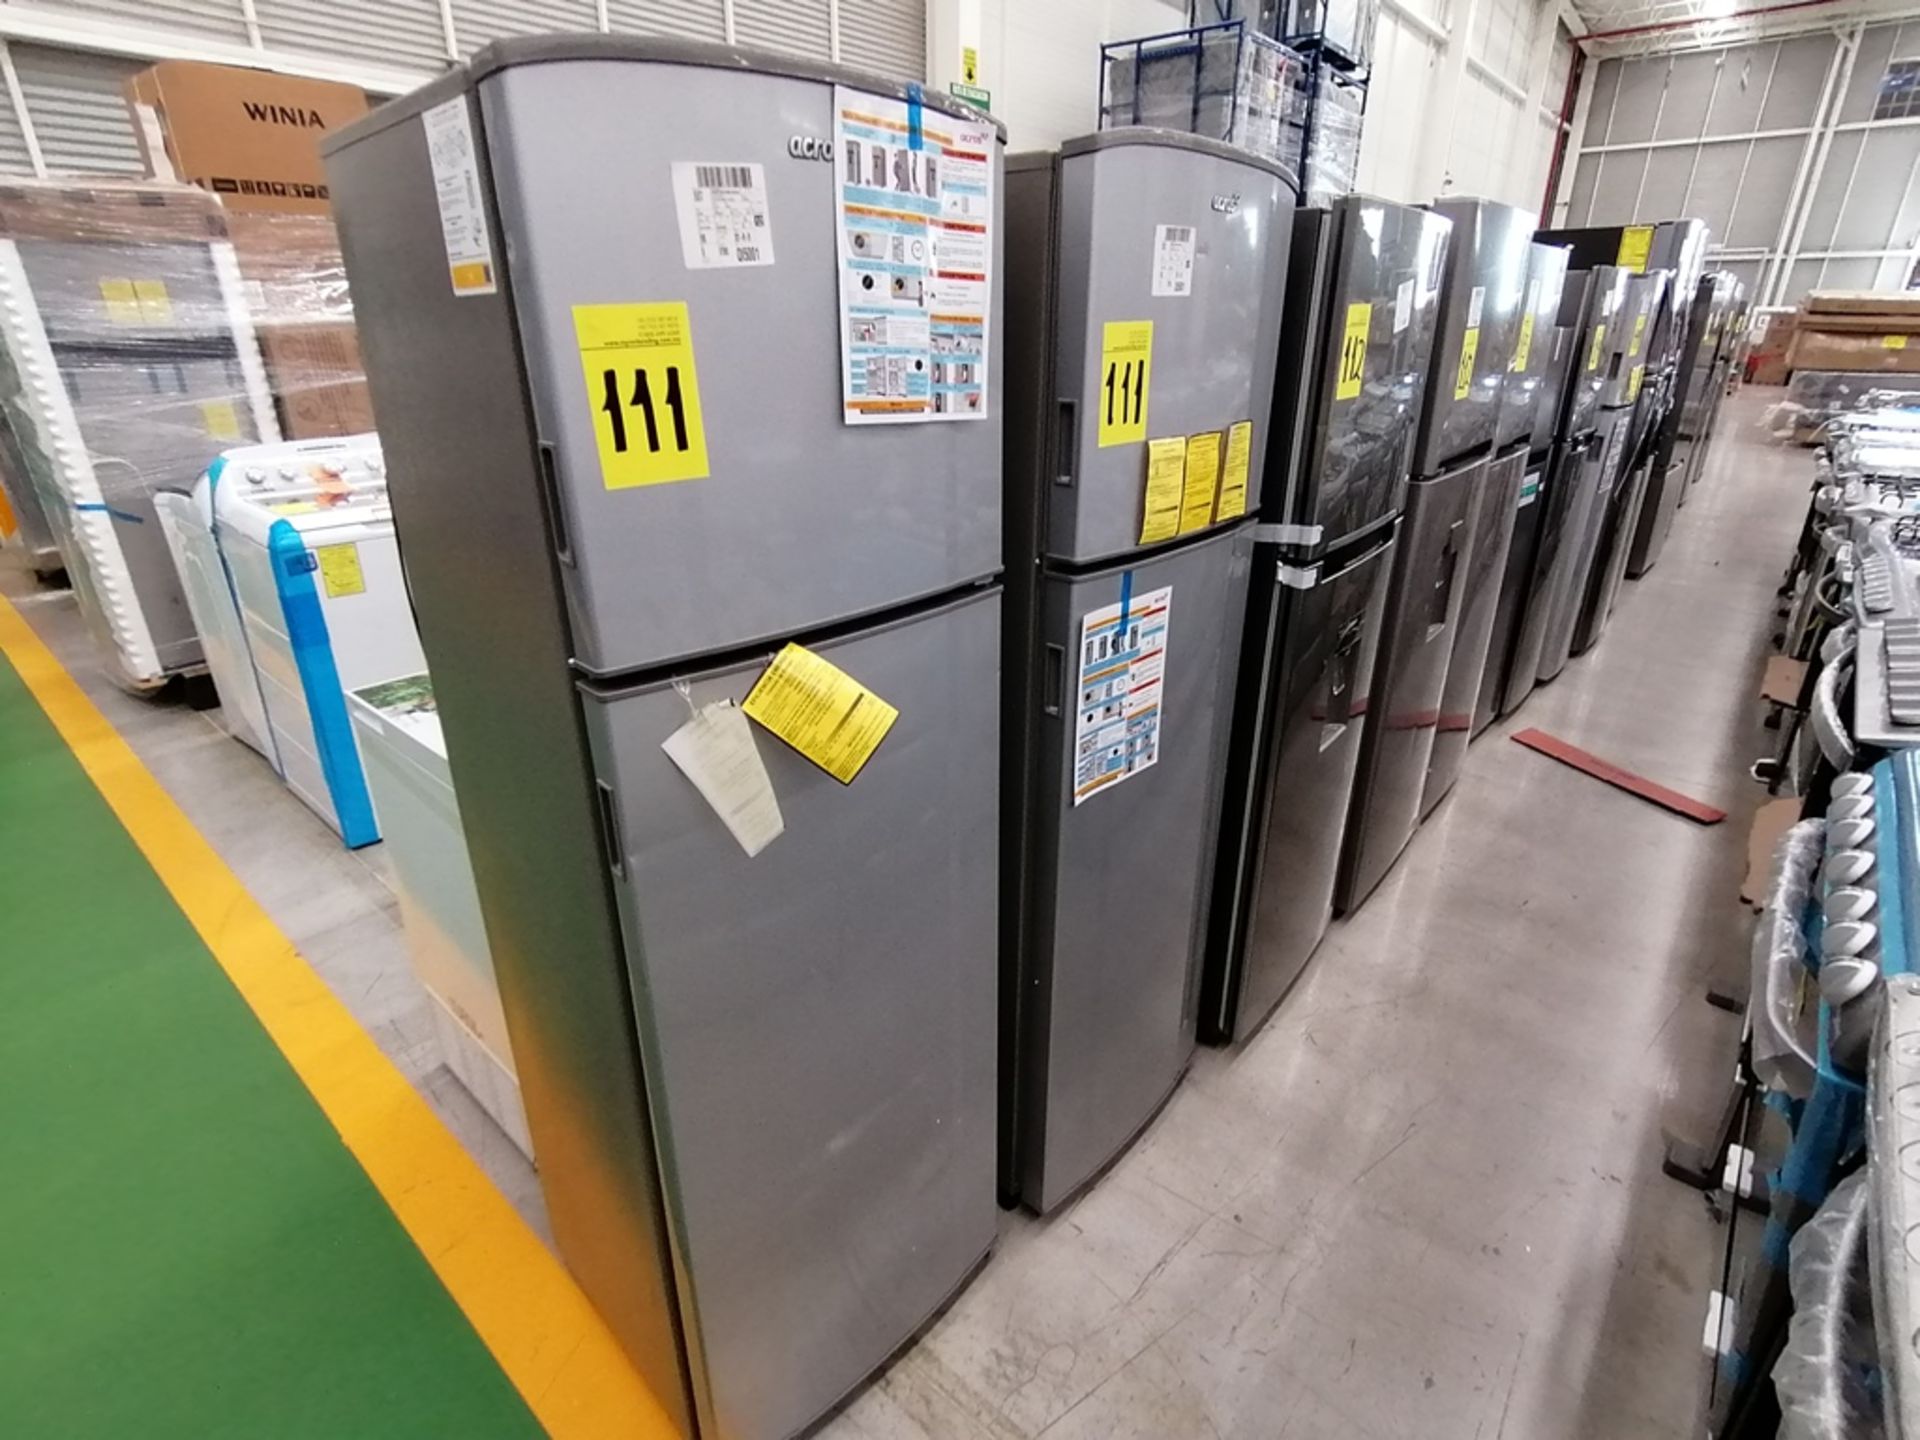 Lote de 2 refrigeradores incluye: 1 Refrigerador, Marca Acros, Modelo AT9007G, Serie VRA4332547, Co - Image 2 of 14